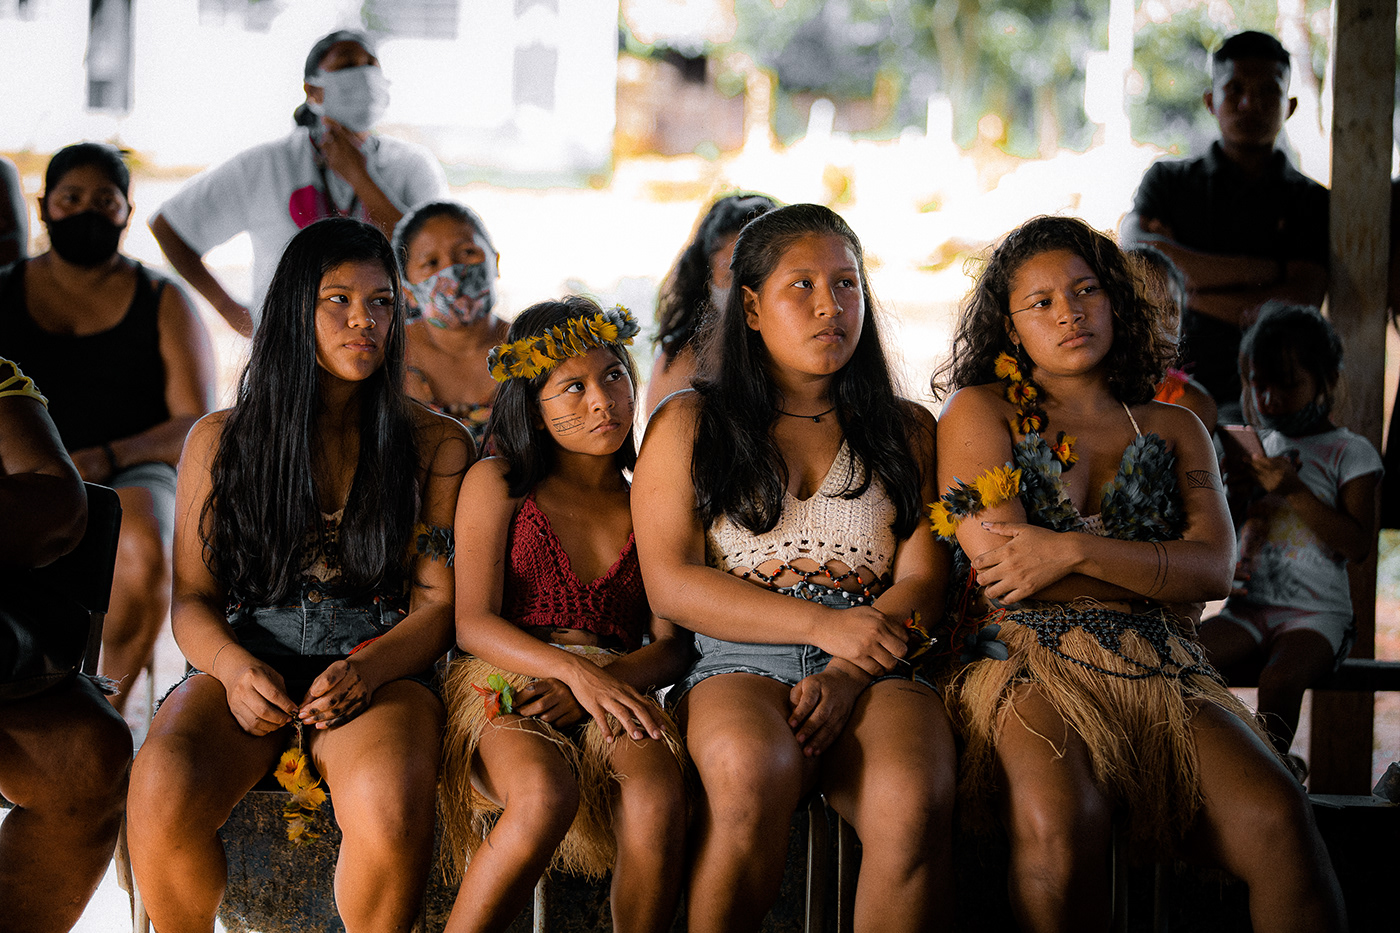 Brasil Brazil Fotografia indigena Indígenas do Brasil indigenous Photography 